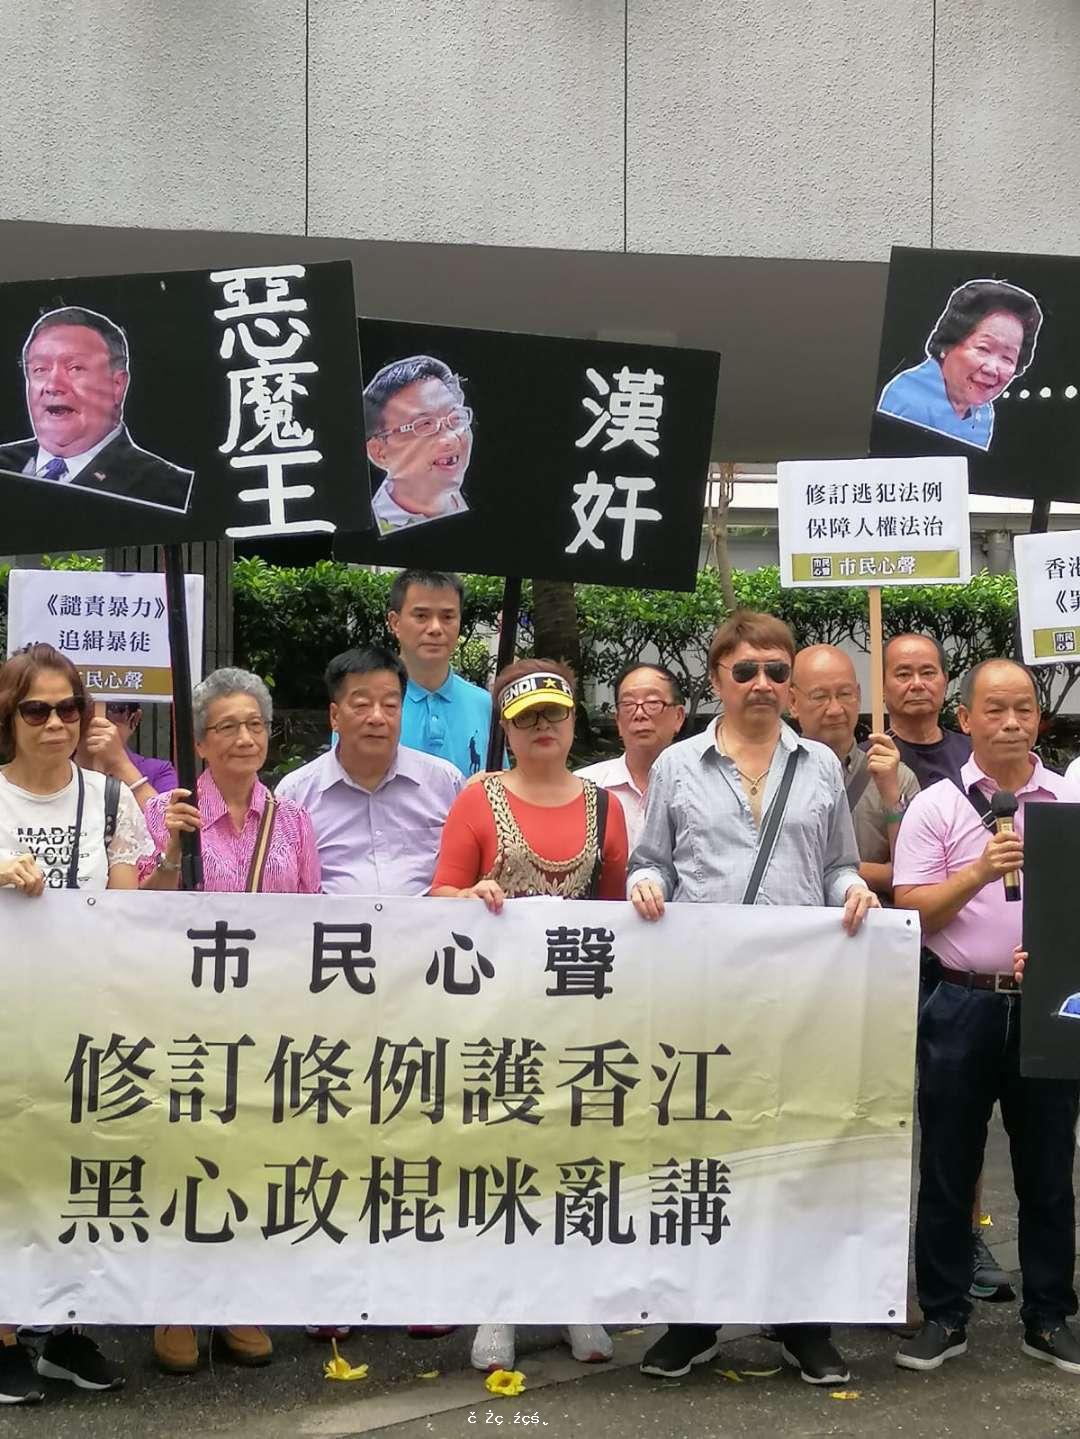 多個團體赴總領館遞抗議信 批用「顏色革命」手段撕裂香港